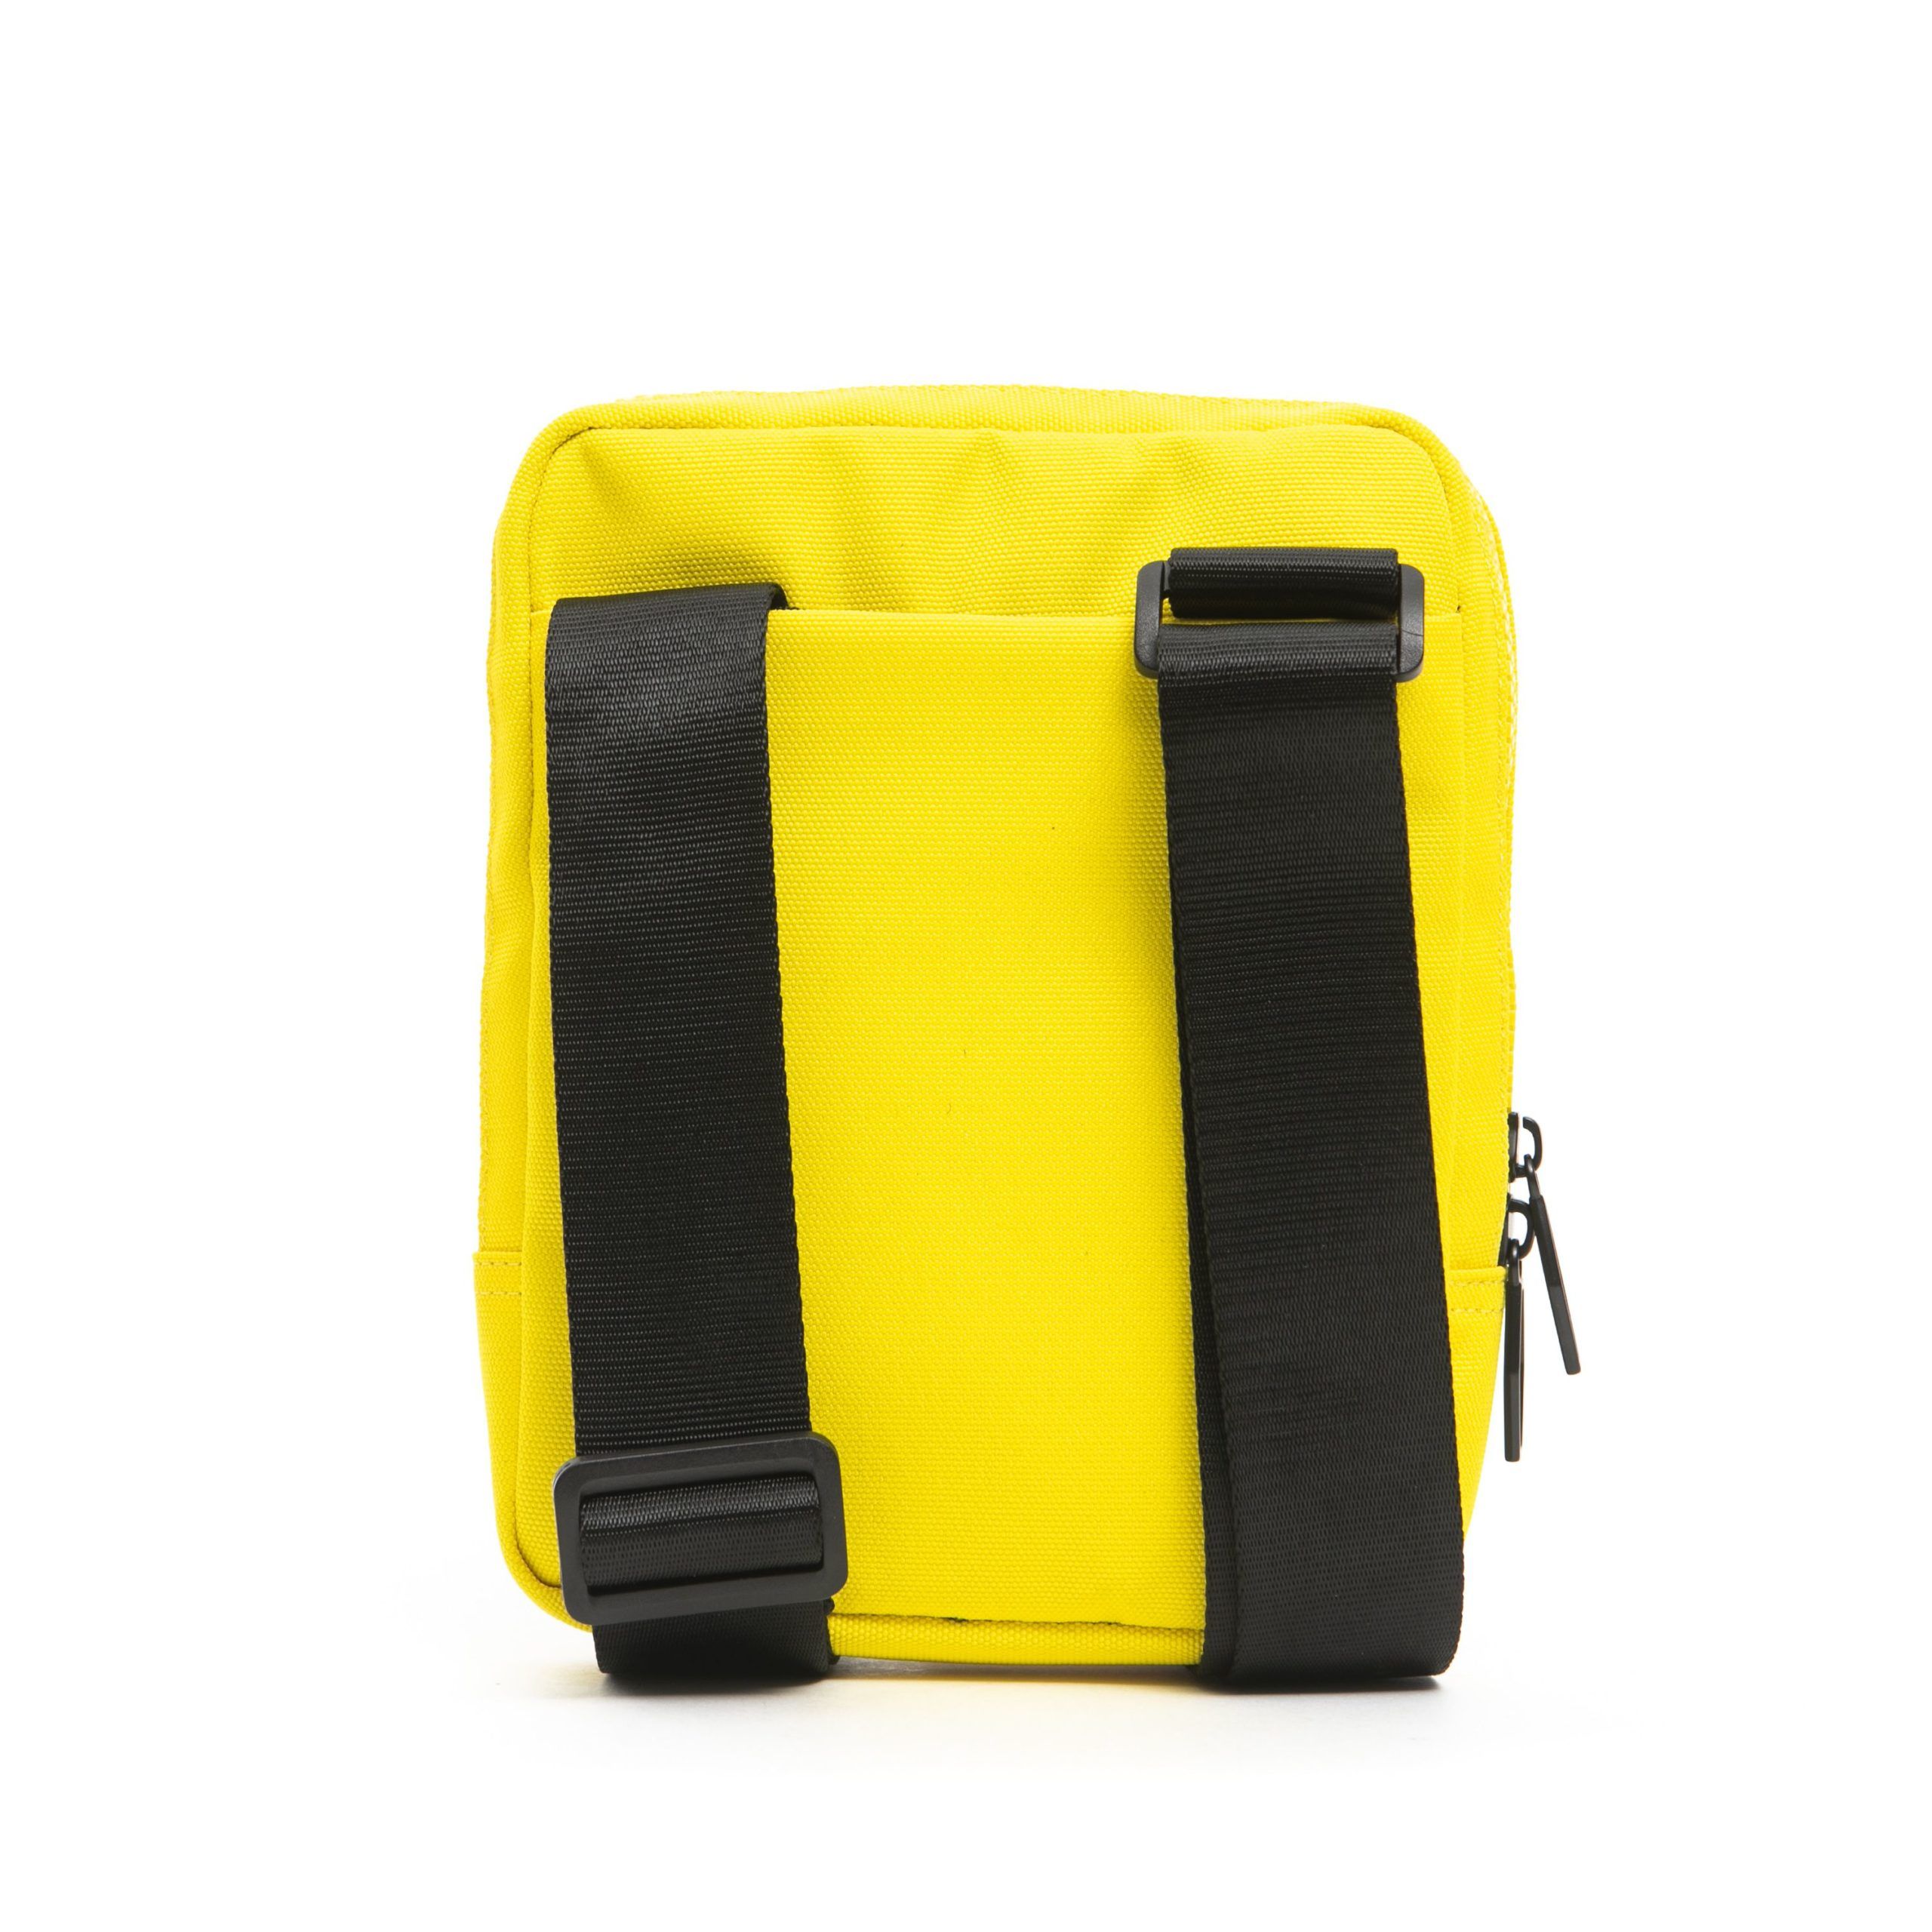 Sleek Yellow Satchel with Adjustable Strap